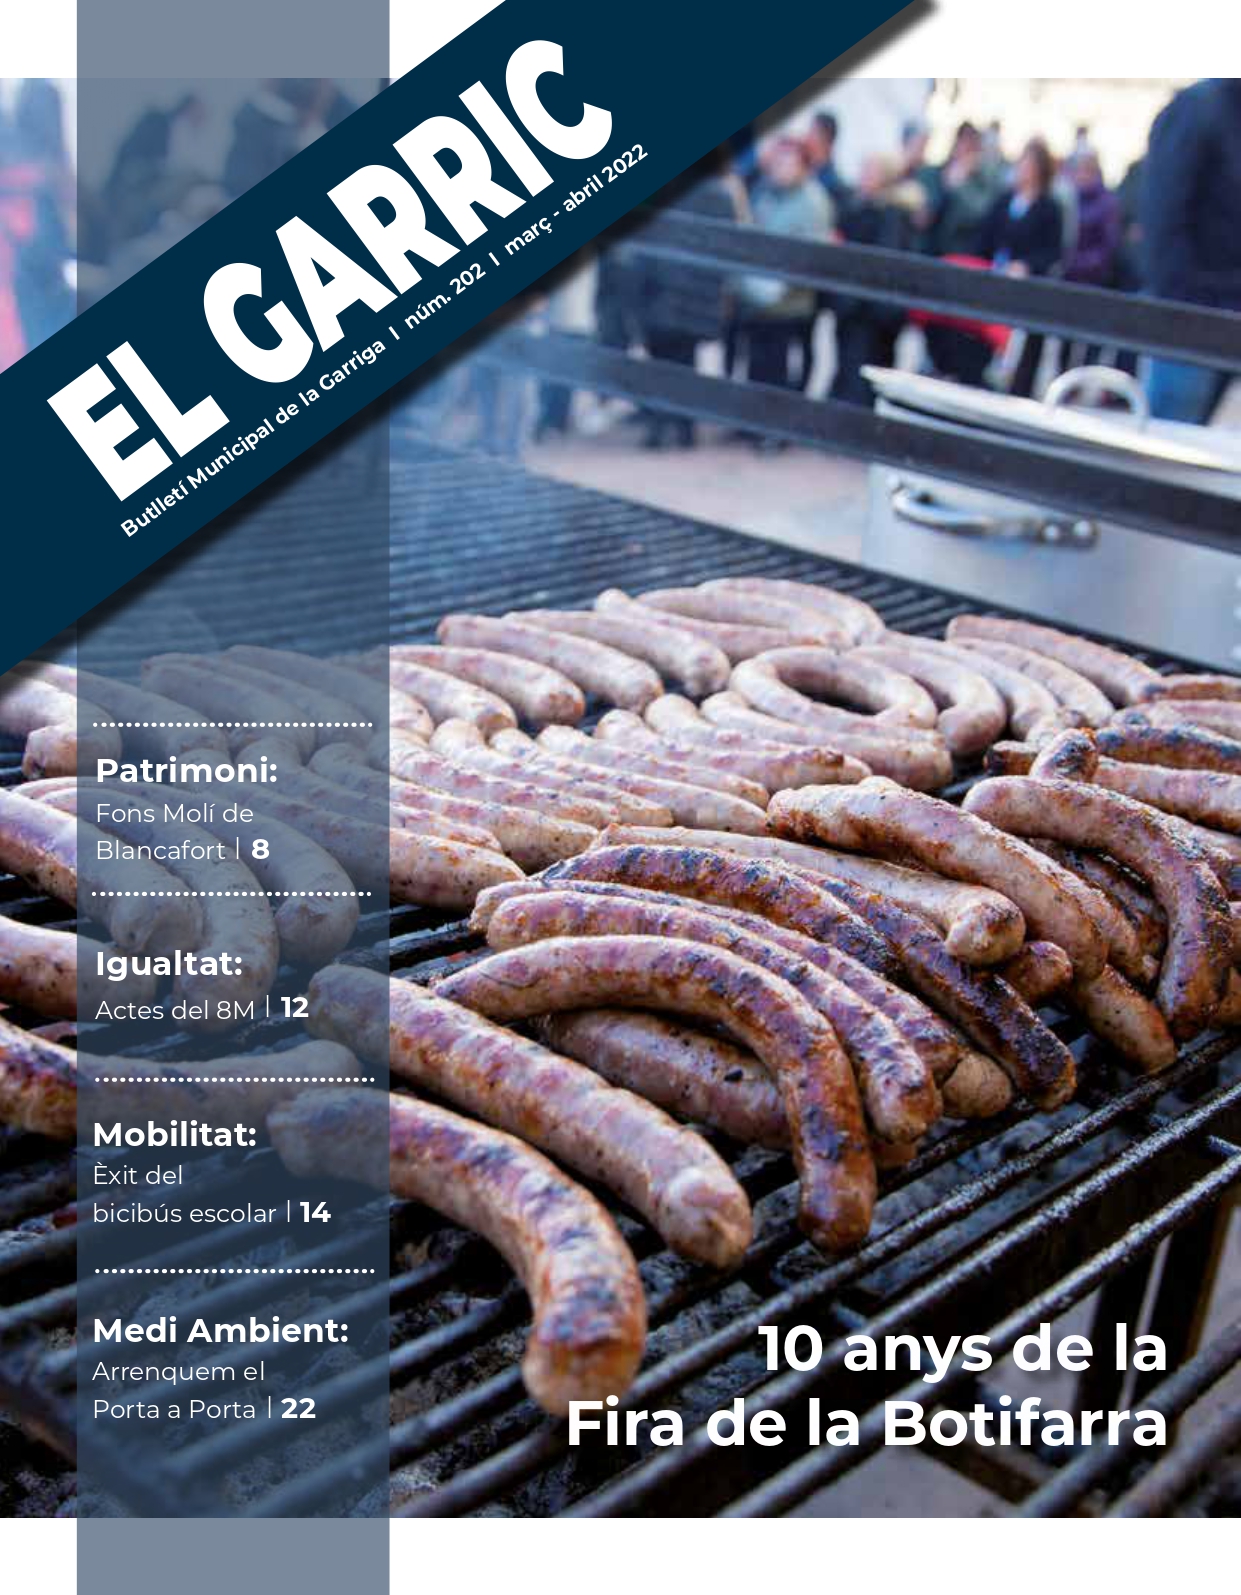 La Fira de la Botifarra, a la portada d'El Garric